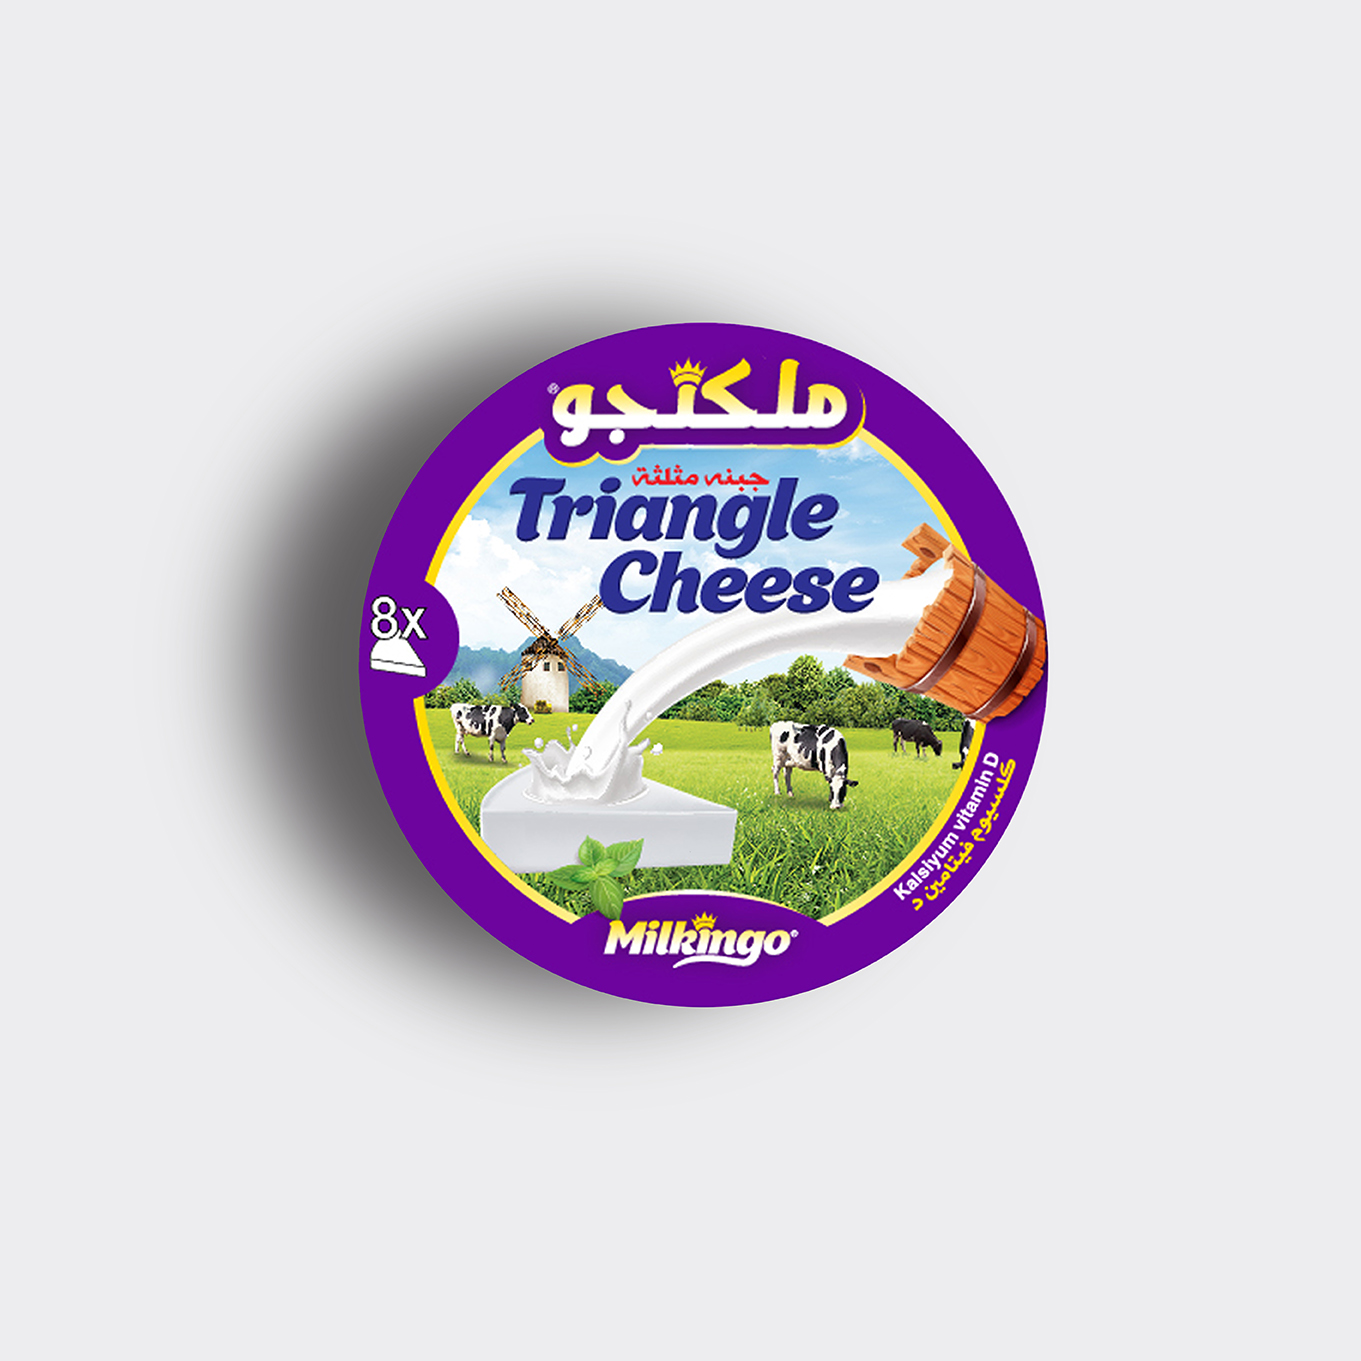 üçgen-peynir-kutu-tasarimi